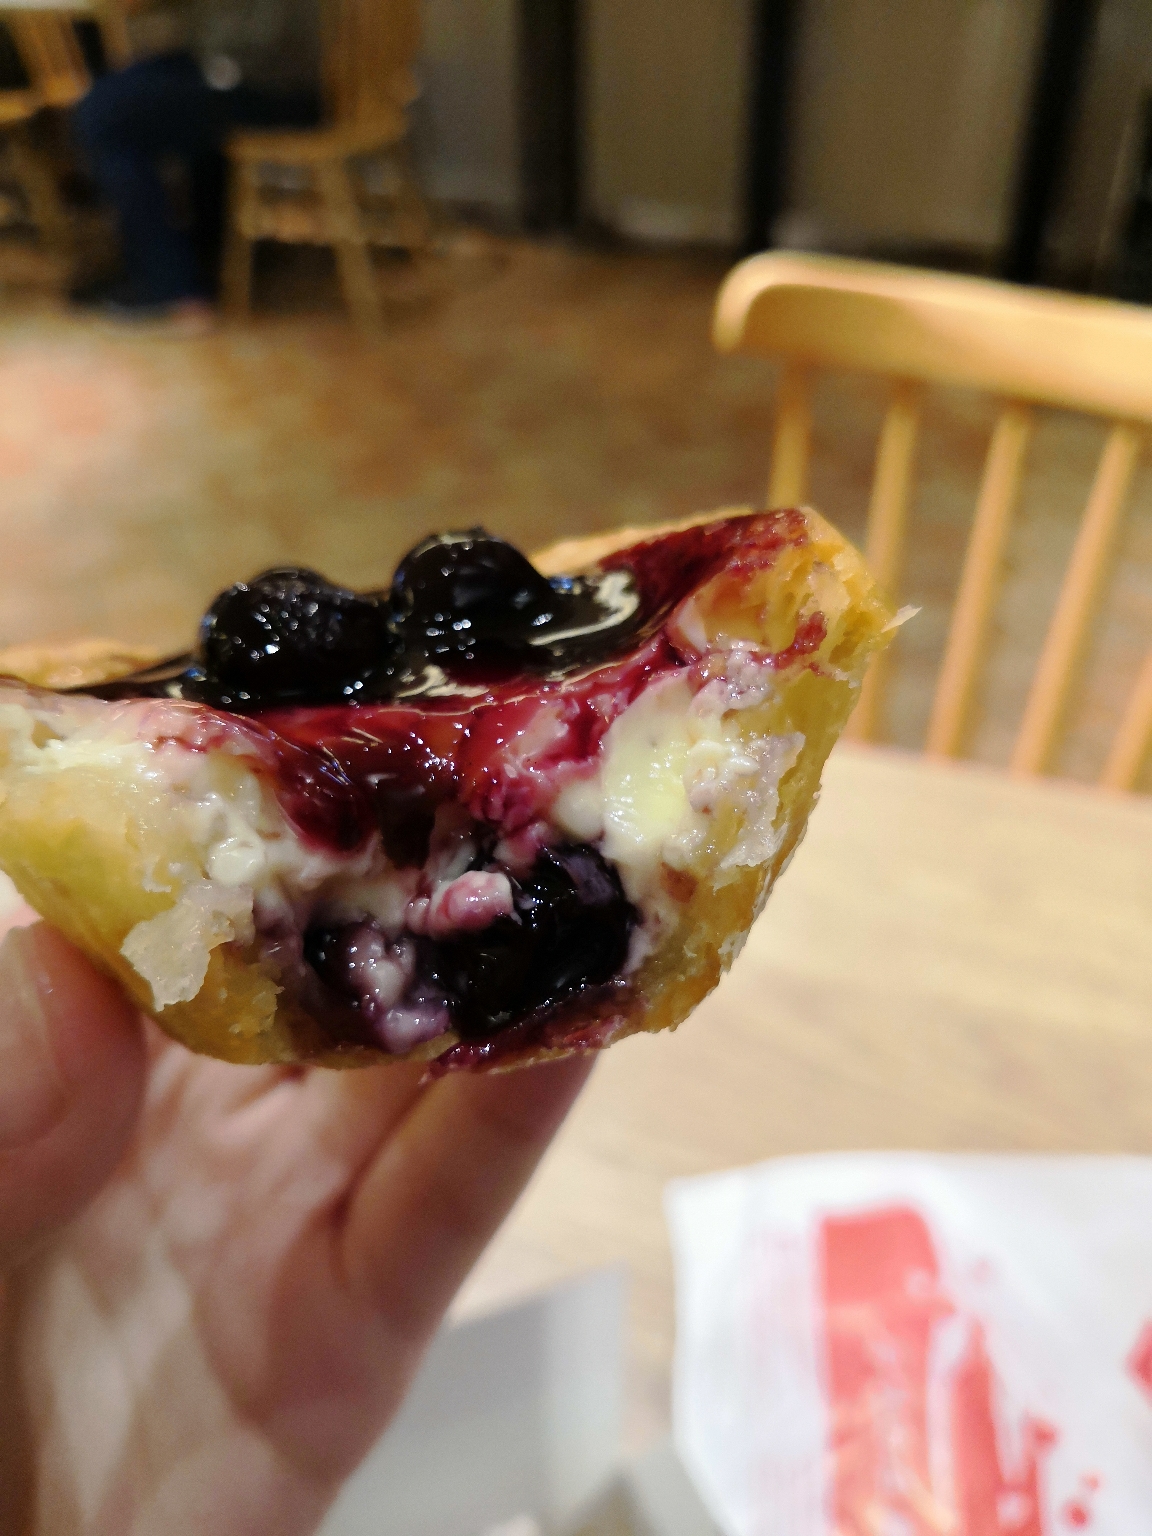 肯德基蓝莓蛋挞图片